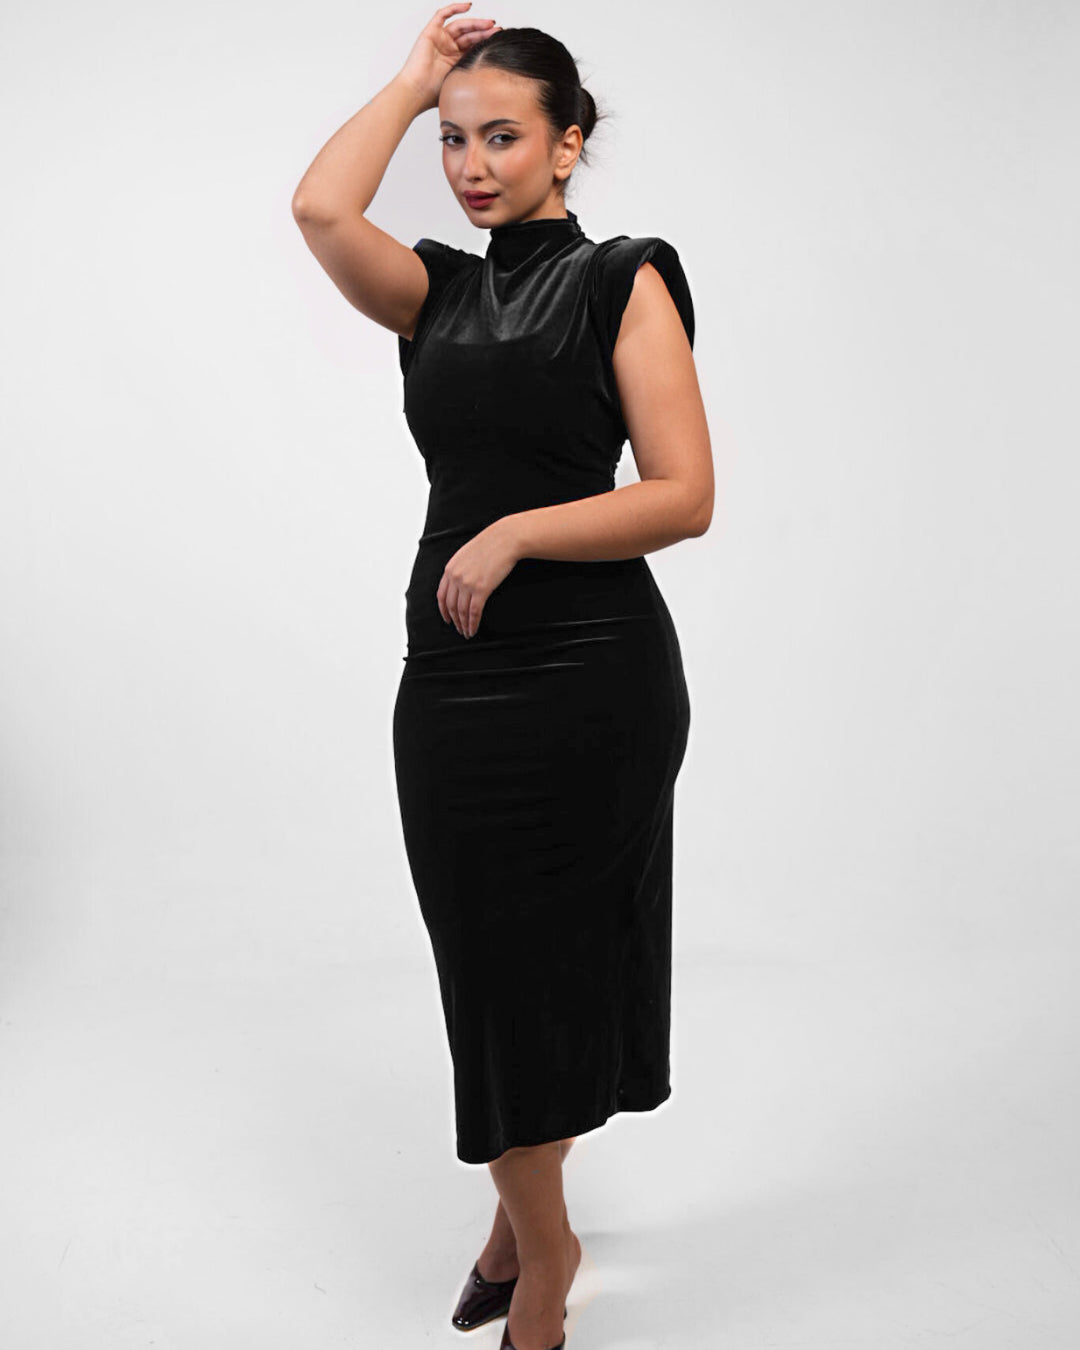 Monore Black Velvet Dress